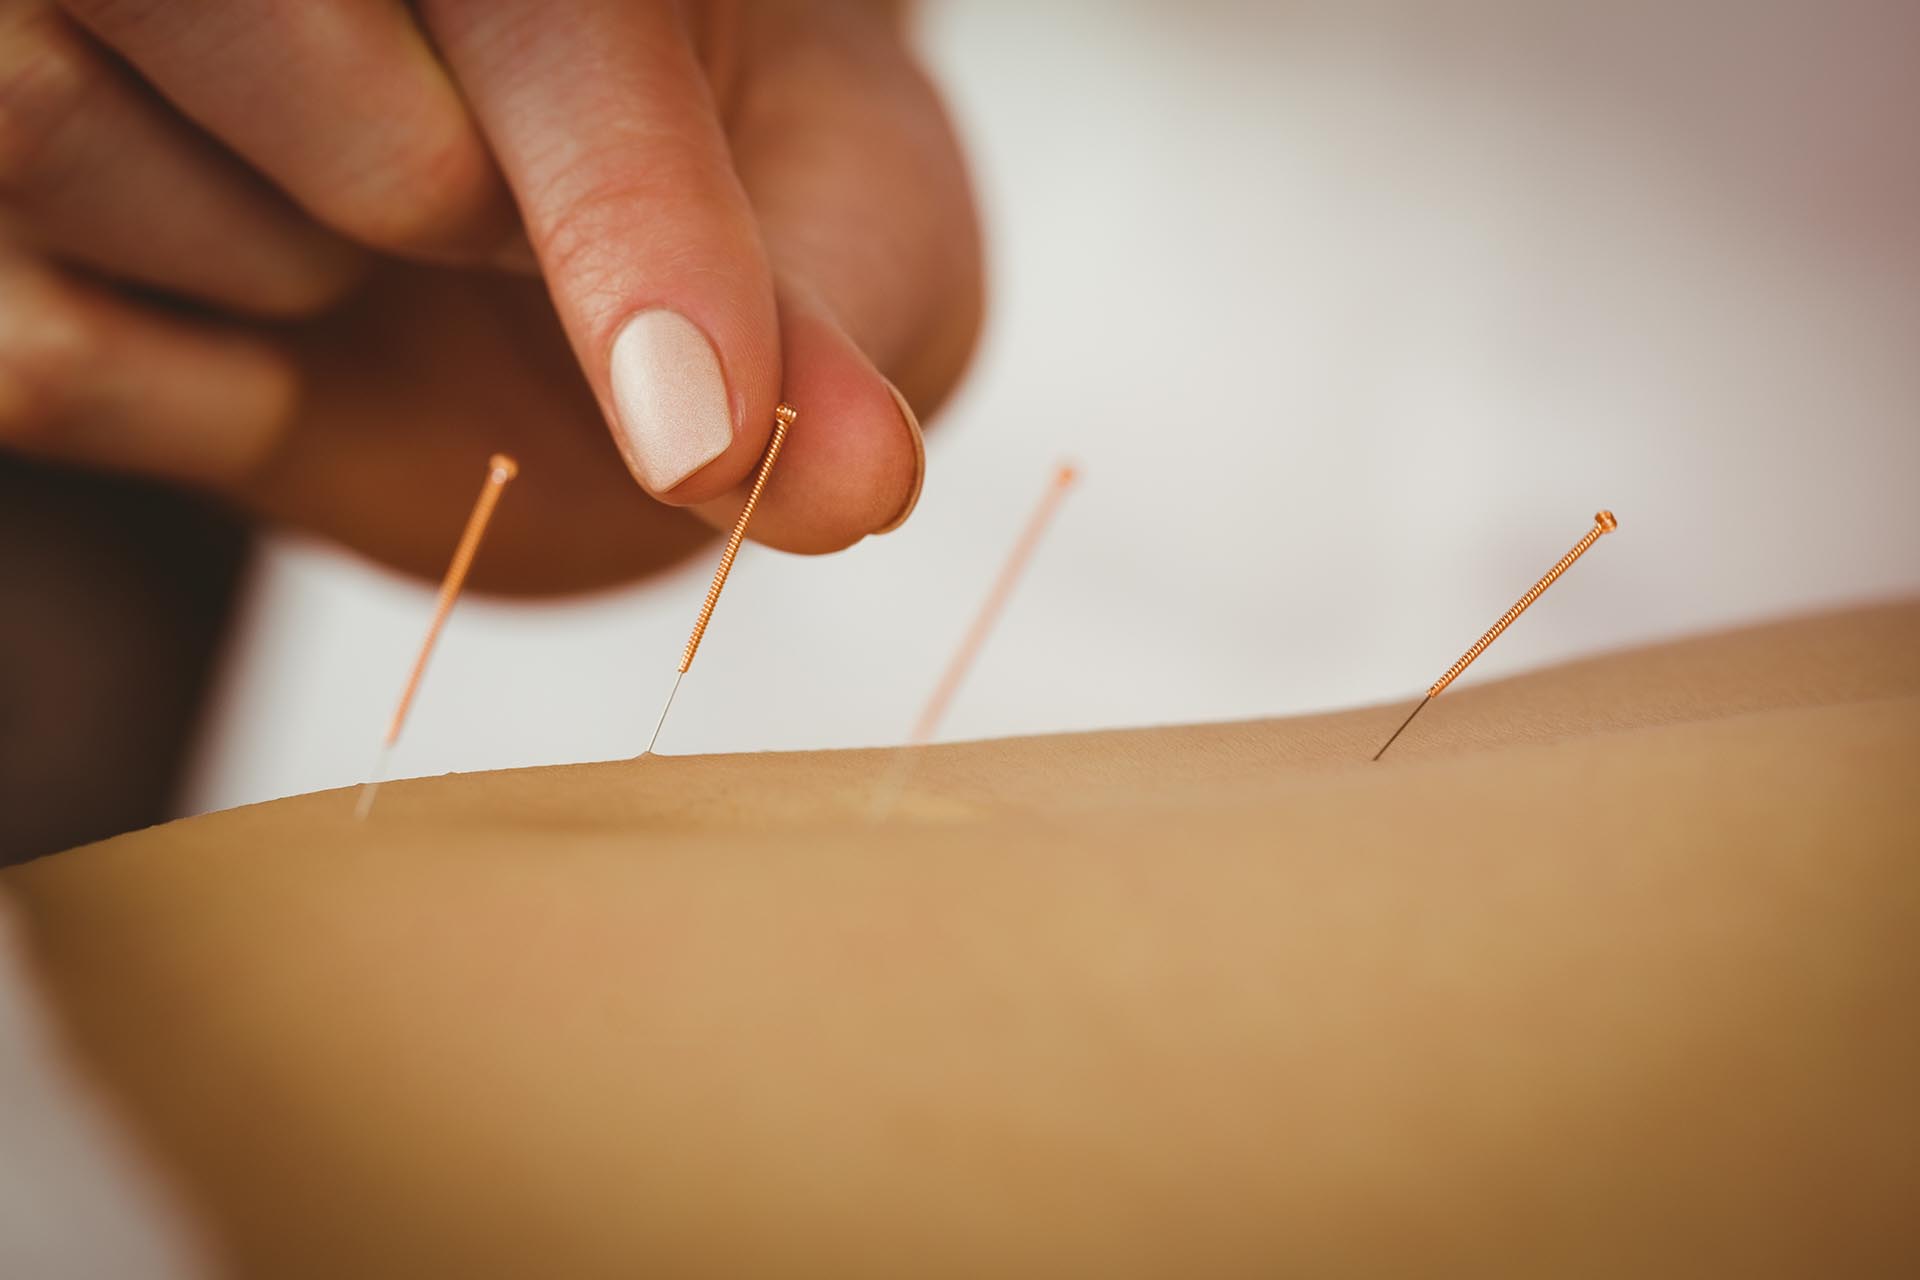 L'agopuntura viene utilizzato per trattare il dolore cronico alla testa, alle articolazioni, alla schiena.